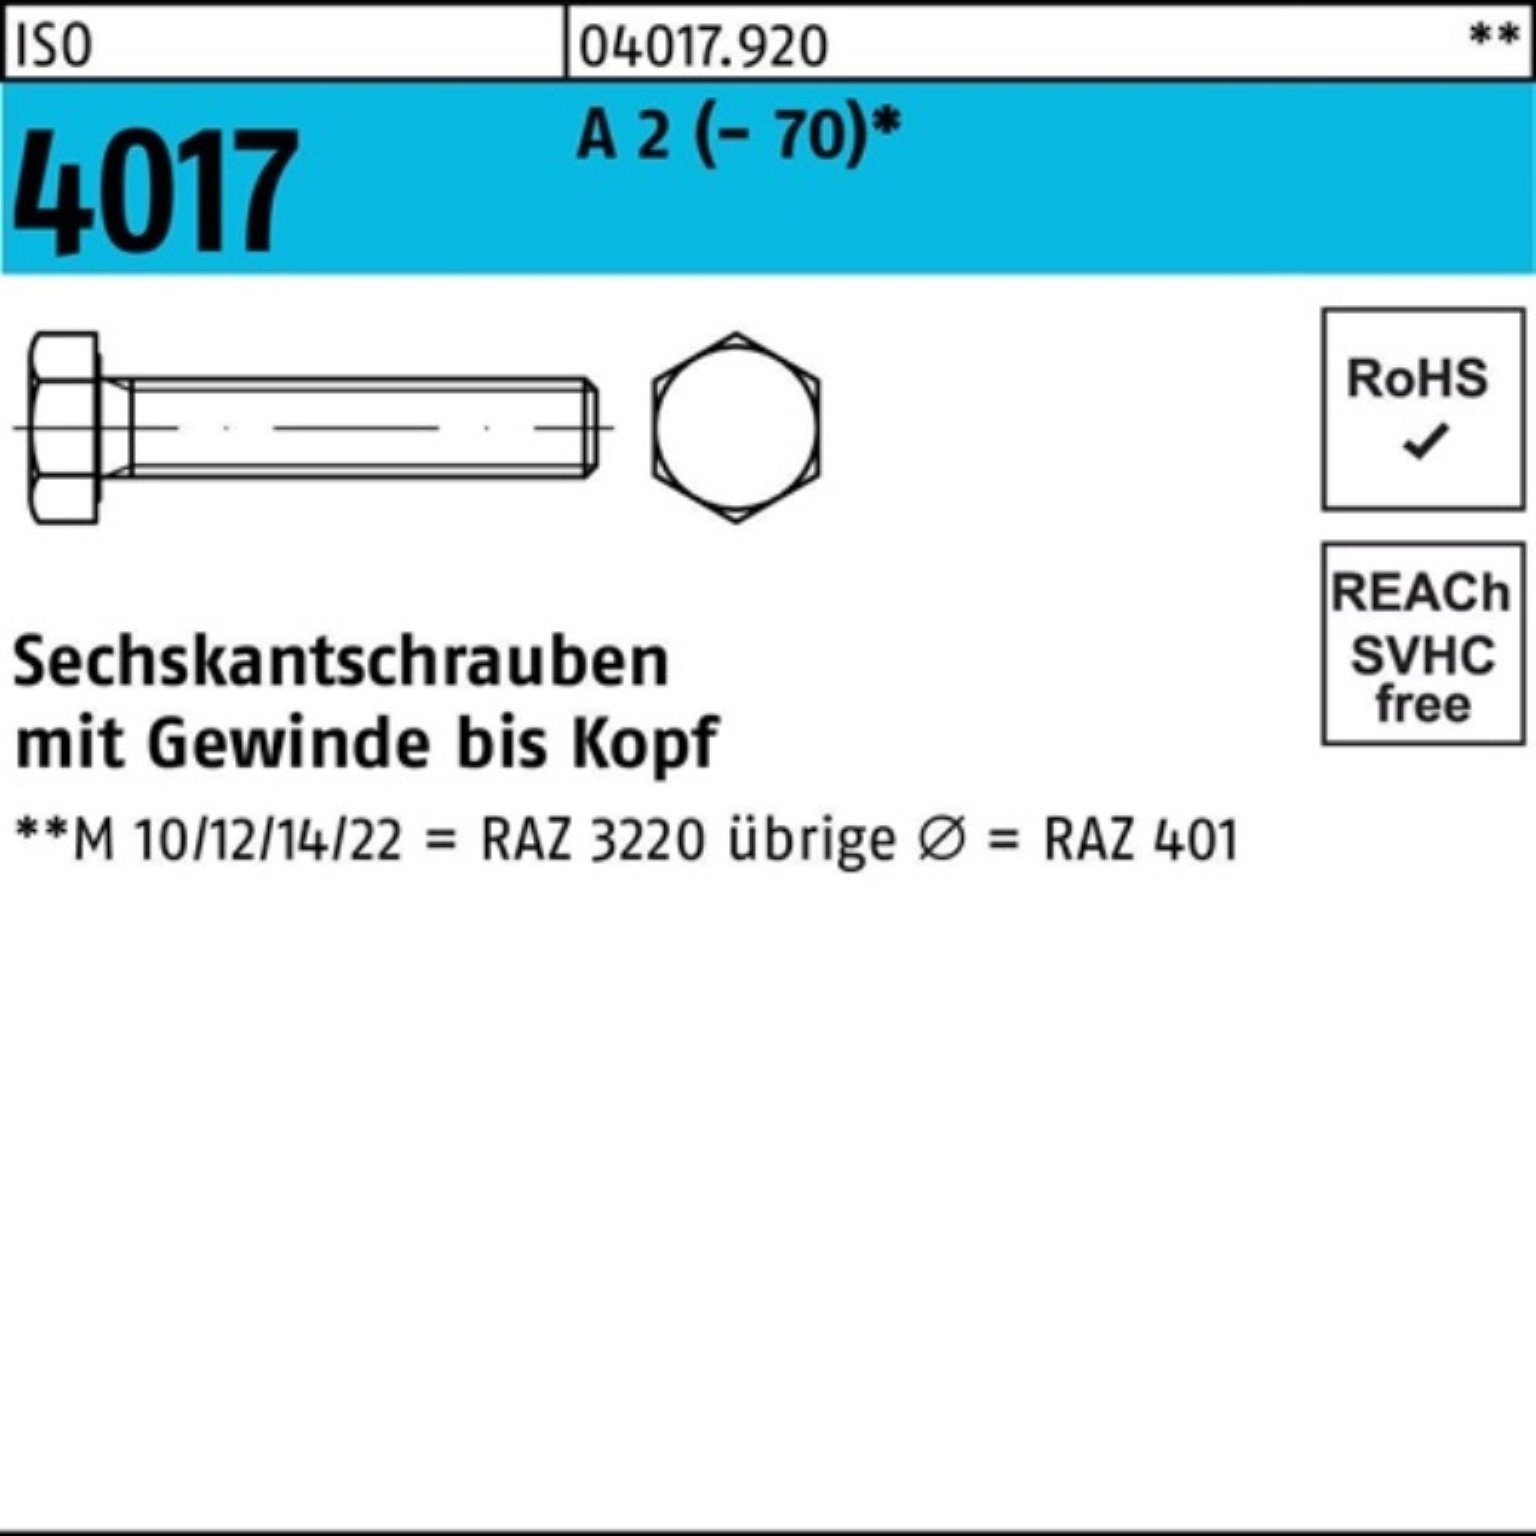 Bufab Sechskantschraube 200er Pack Sechskantschraube ISO 4017 VG M5x 30 A 2 (70) 200 Stück